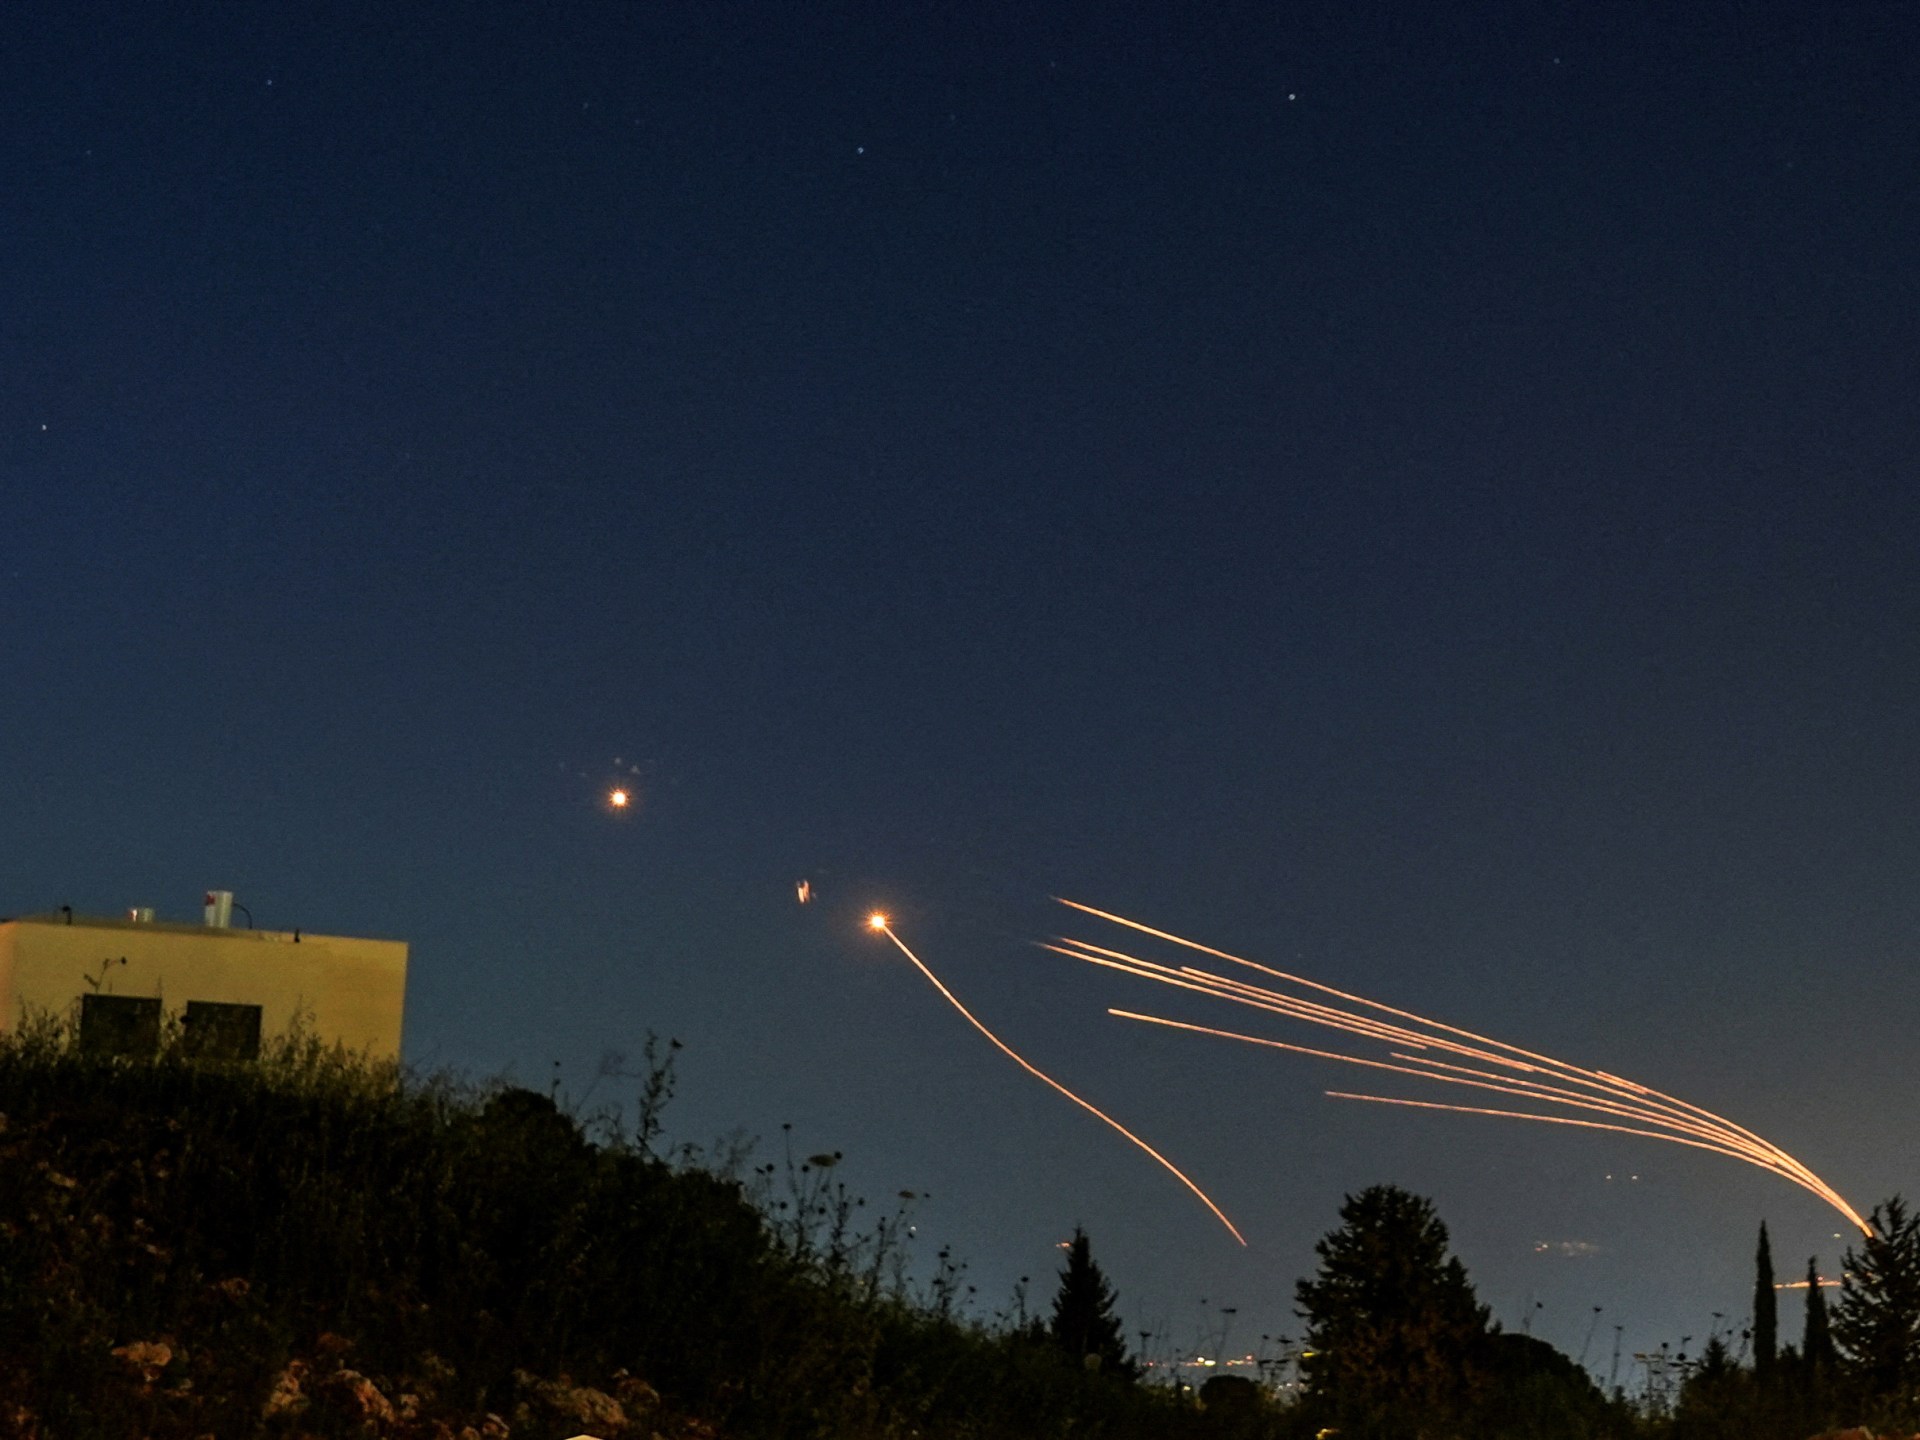 حزب الله يقصف مواقع إسرائيلية والاحتلال يرصد 15 صاروخا من لبنان | أخبار – البوكس نيوز